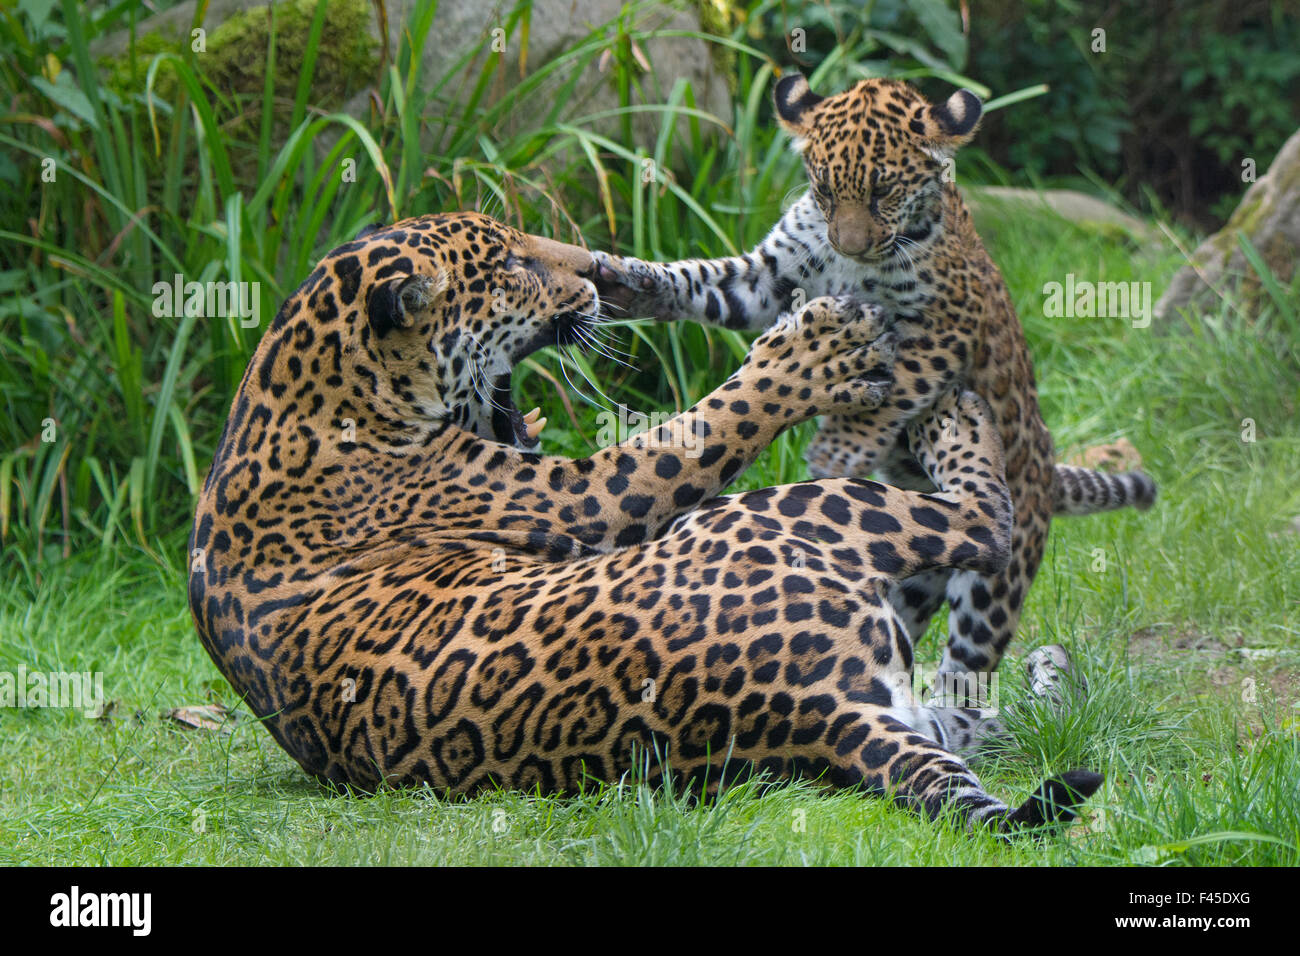 Jaguar femmina (Panthera onca) giocando con il suo cucciolo, captive, avviene in America centrale e meridionale. Foto Stock